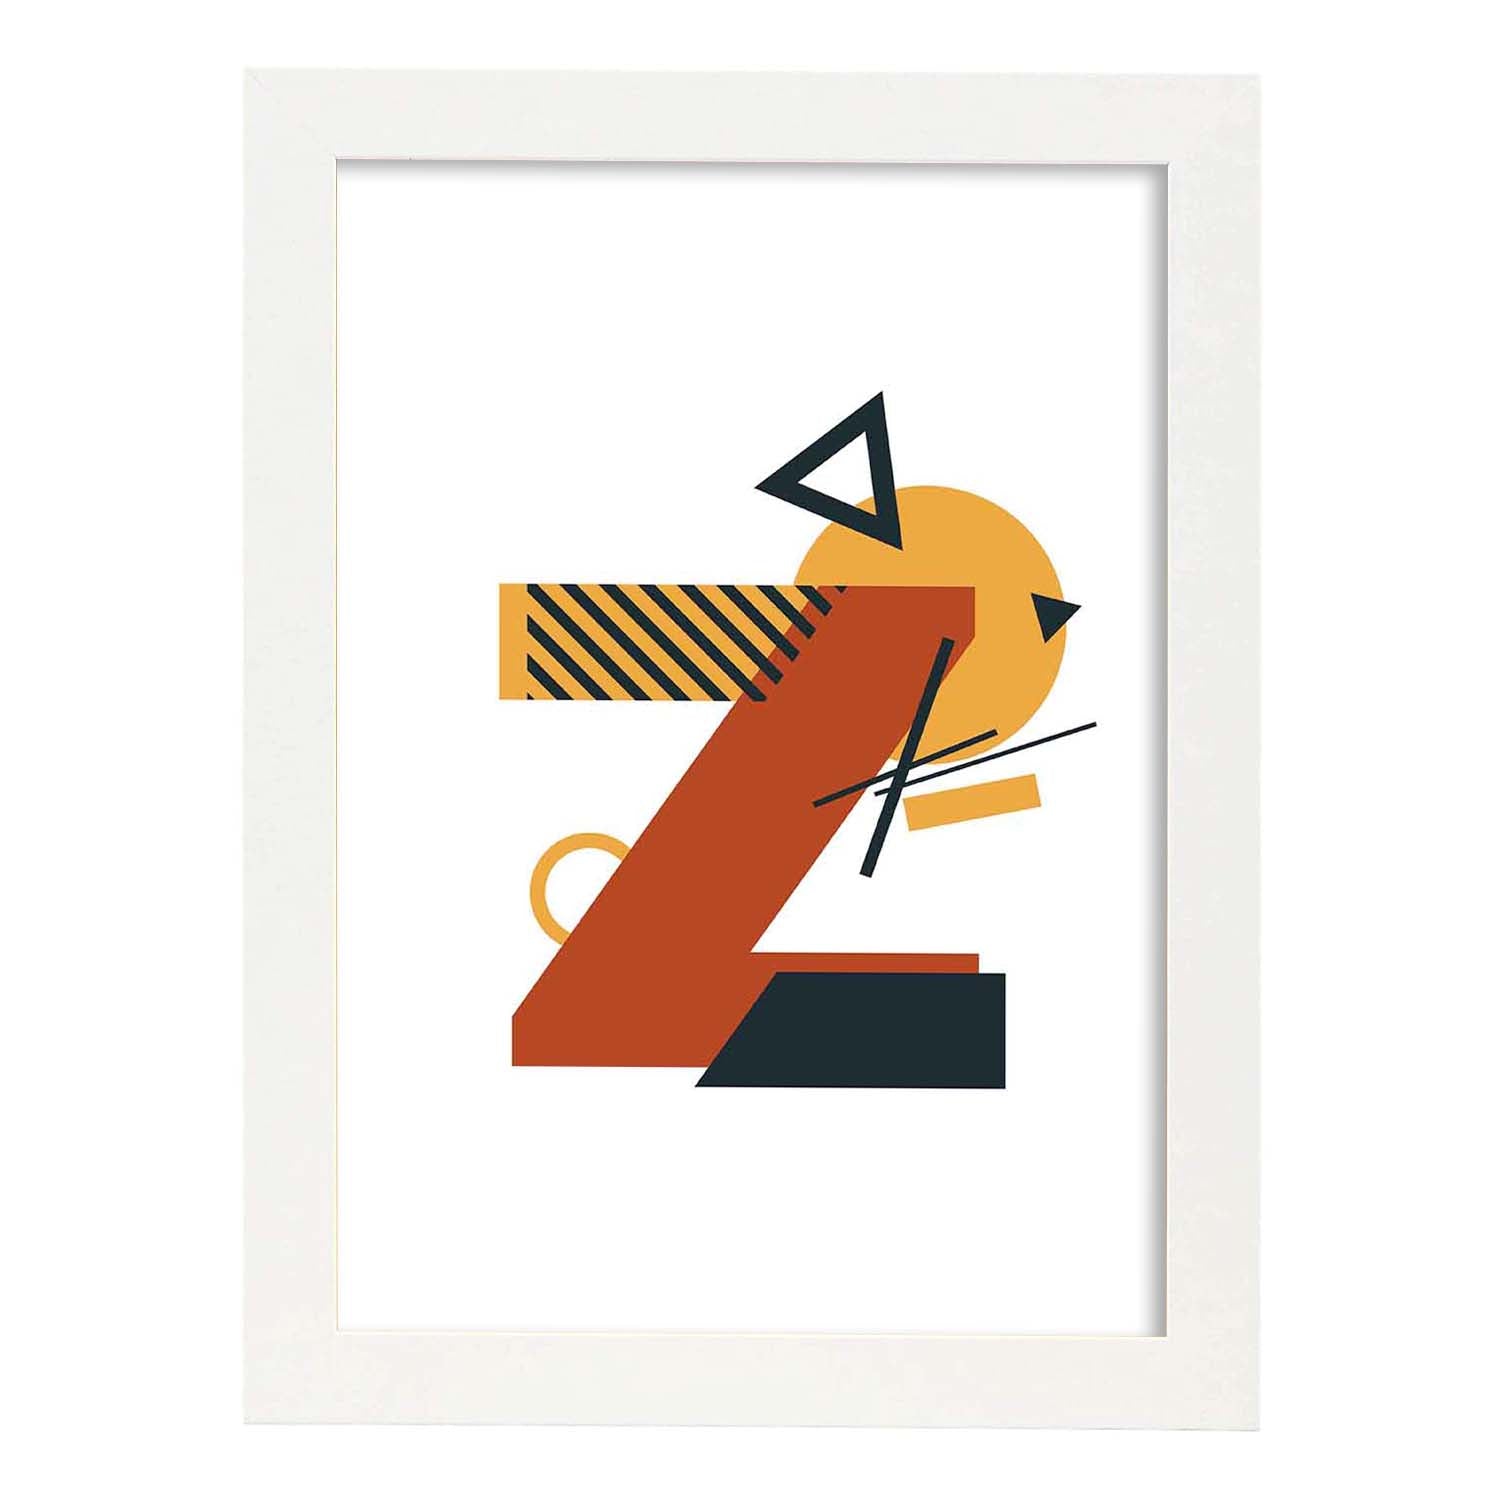 Poster de letra Z. Lámina estilo Geometria con formas con imágenes del alfabeto.-Artwork-Nacnic-A3-Marco Blanco-Nacnic Estudio SL